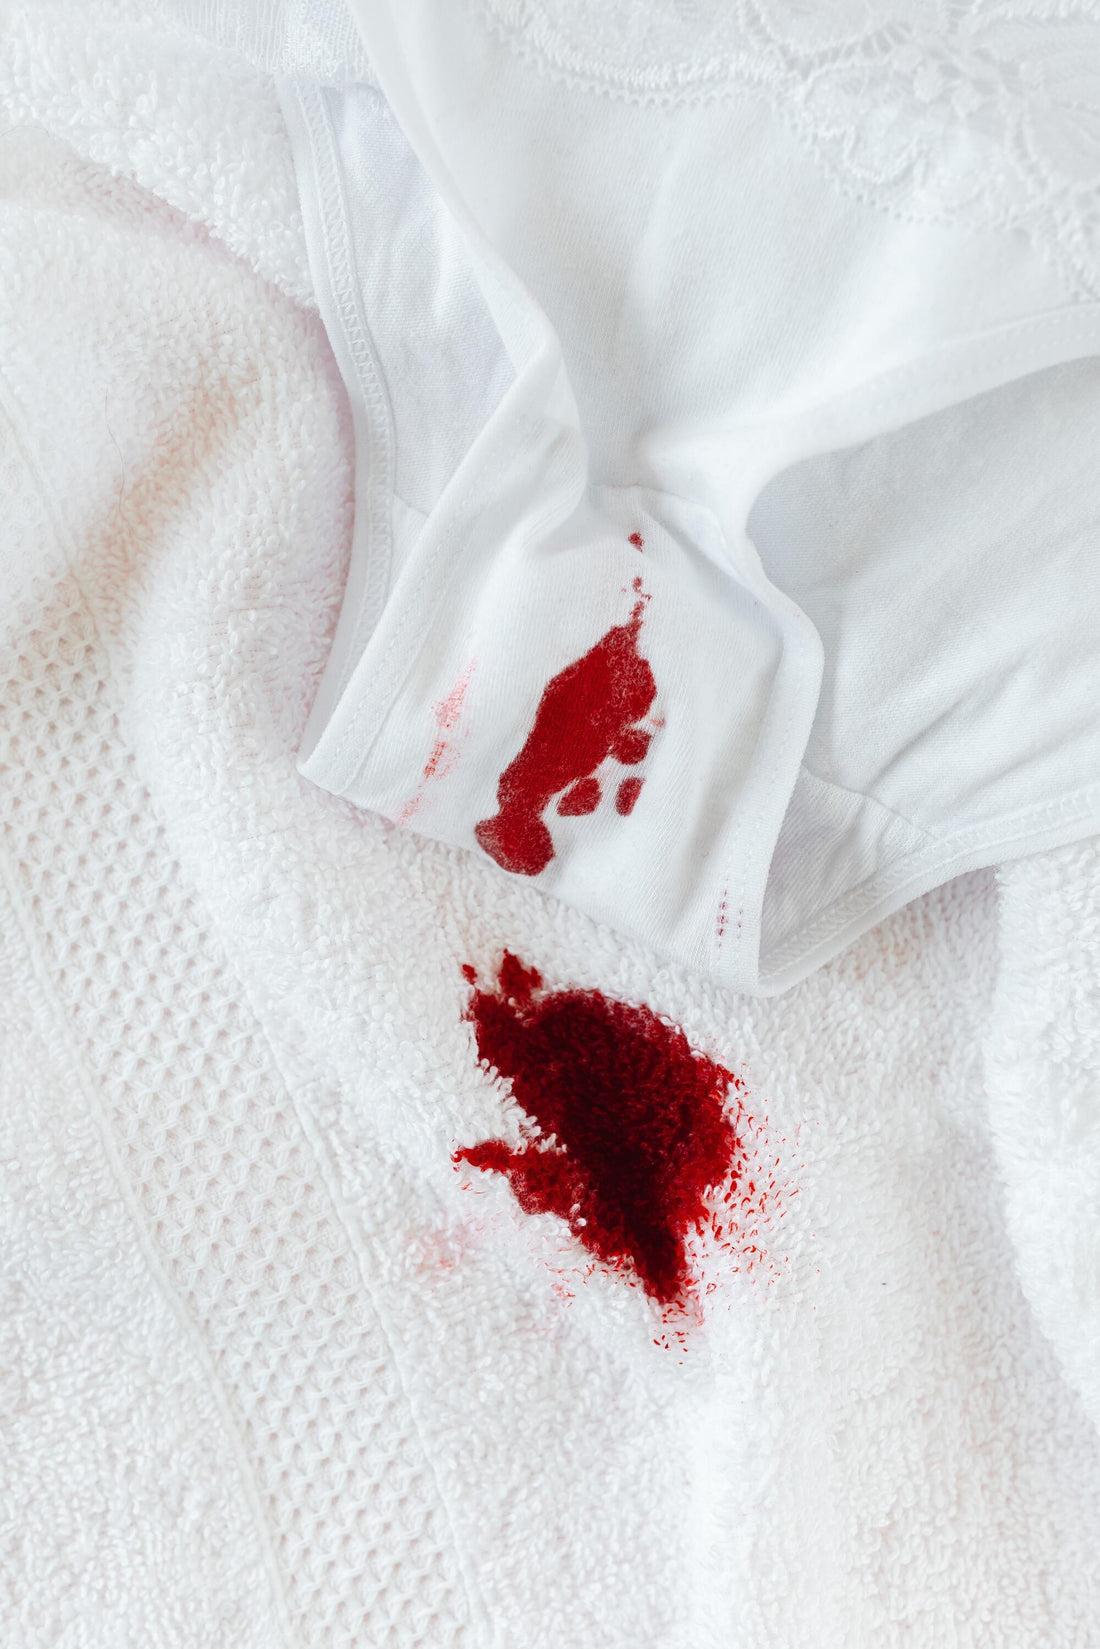 Menstruação desregulada, quando fazer o teste?